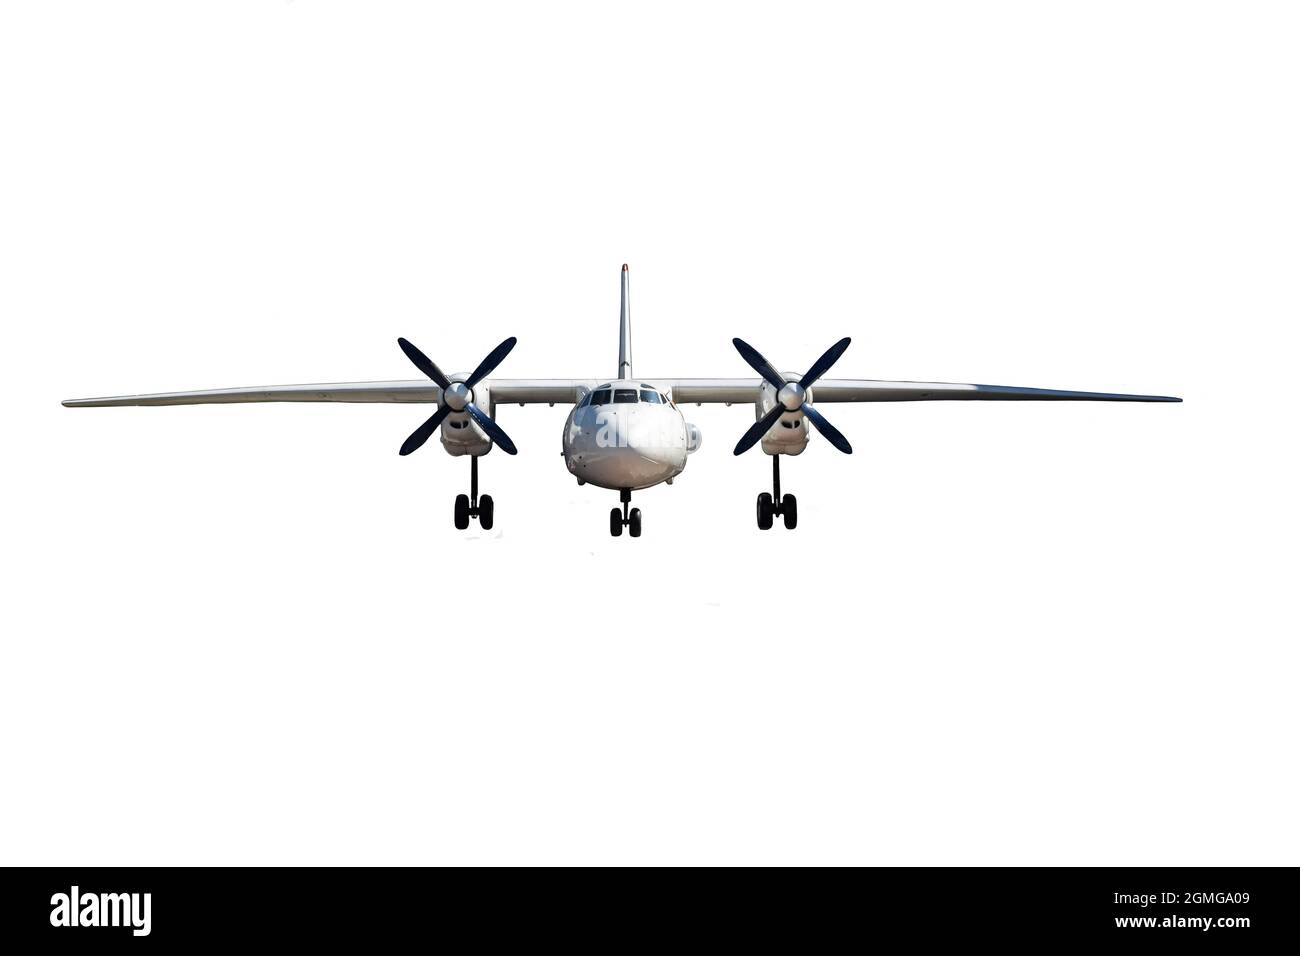 Ein zweimotoriger Passagierflugzeug auf einem sauberen weißen Hintergrund, der von vorne fotografiert wurde. Gehäuse freigegeben Stockfoto